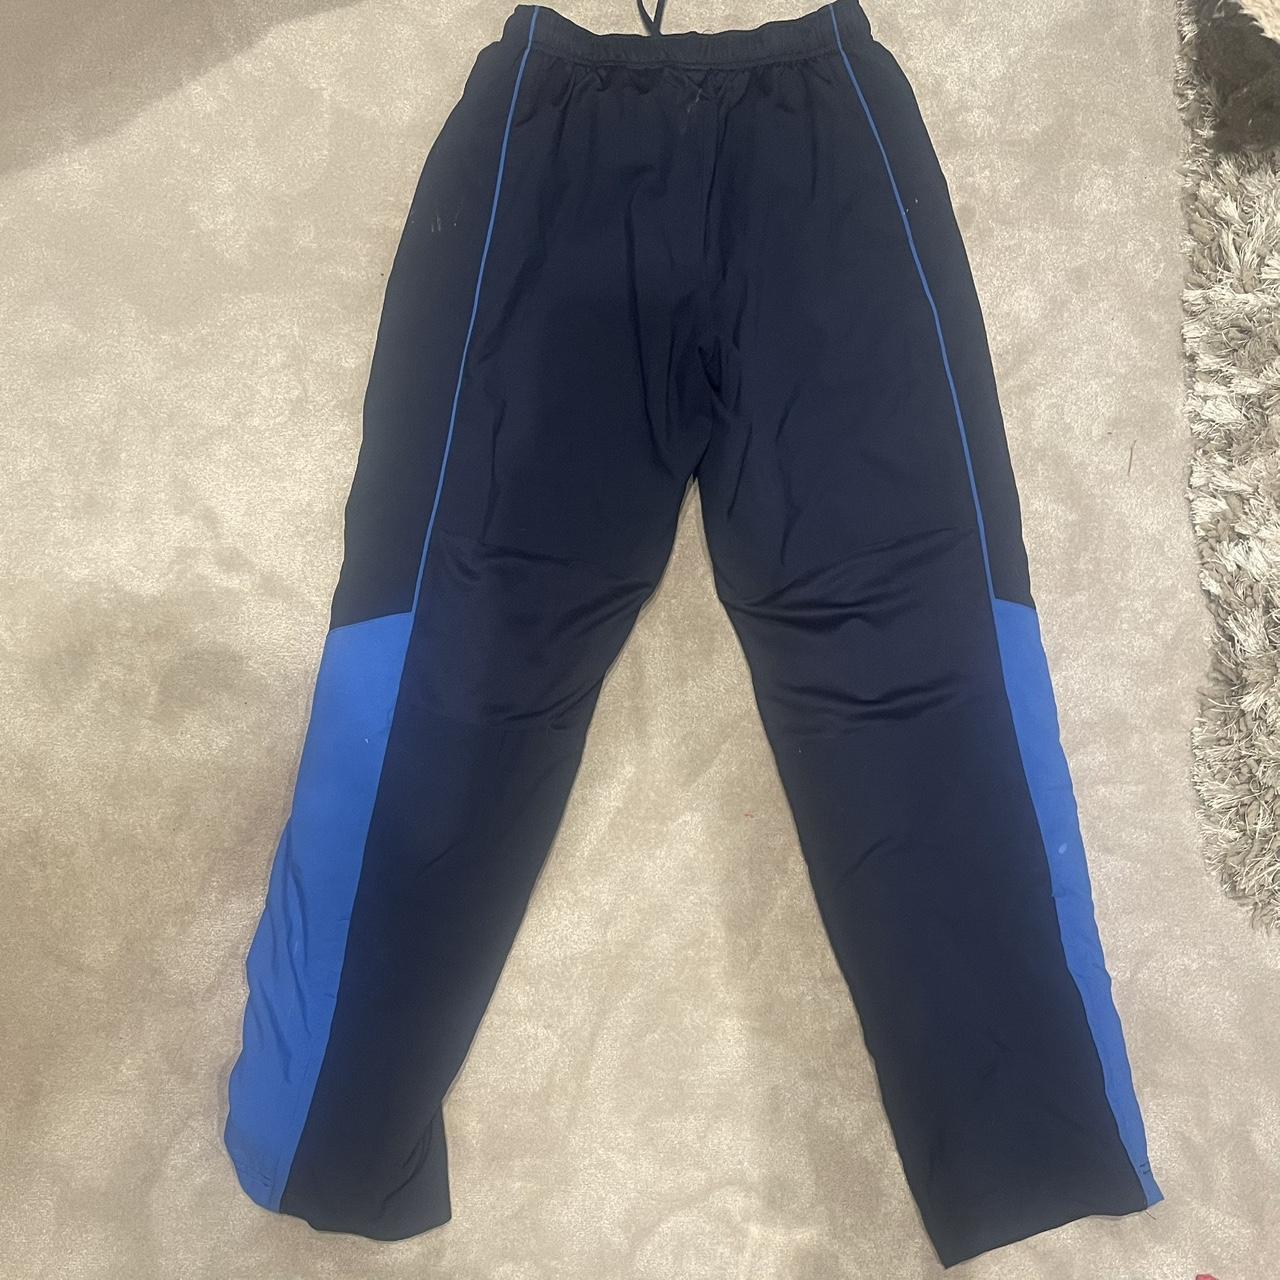 Nike Vintage navy blue track pants. So comfy. Men’s... - Depop